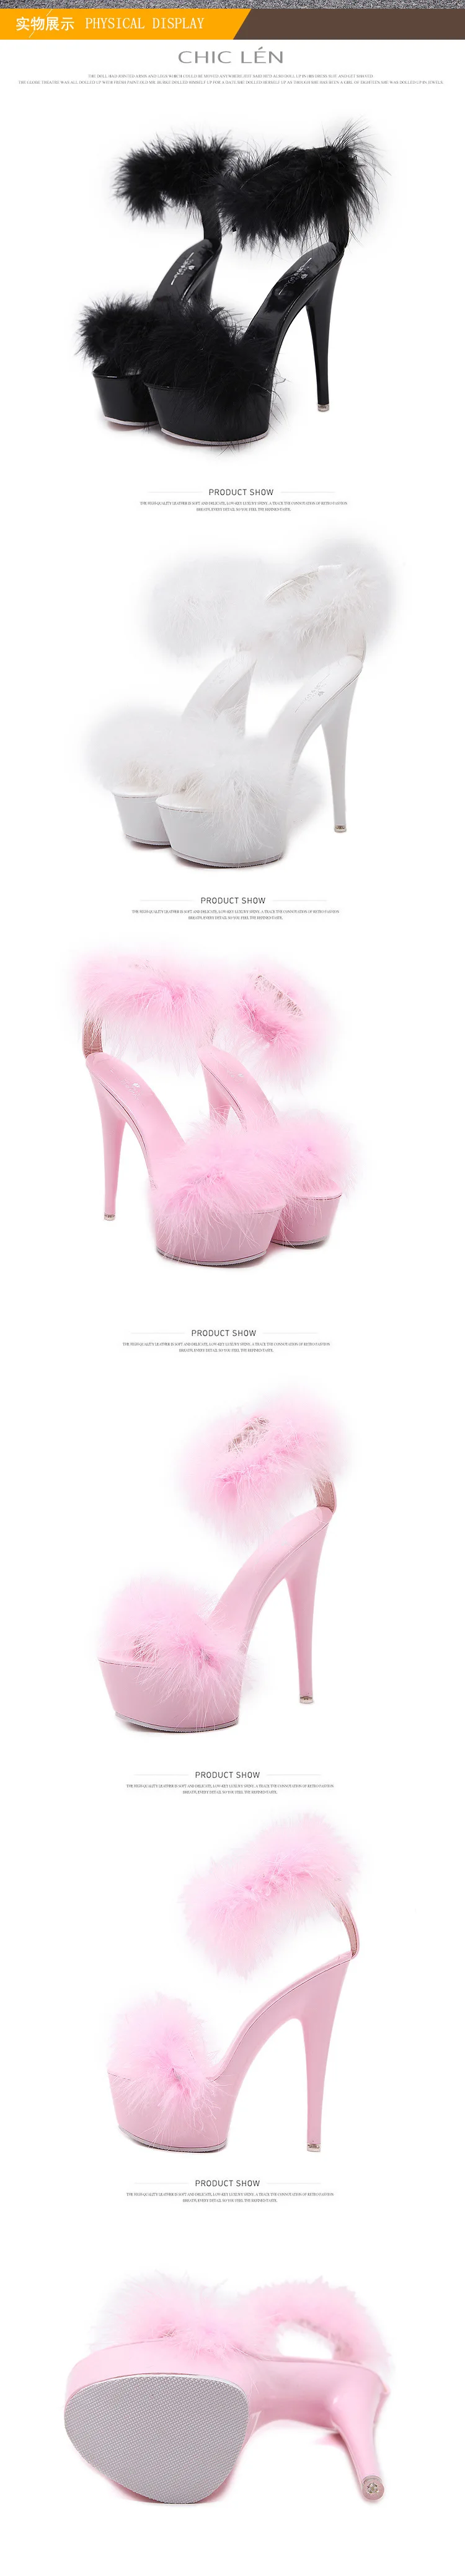 Женские босоножки; Цвет черный, белый, розовый; женская обувь для стриптиза; большой размер 43; женские босоножки на меху; Летняя обувь на платформе и высоком каблуке 15 см